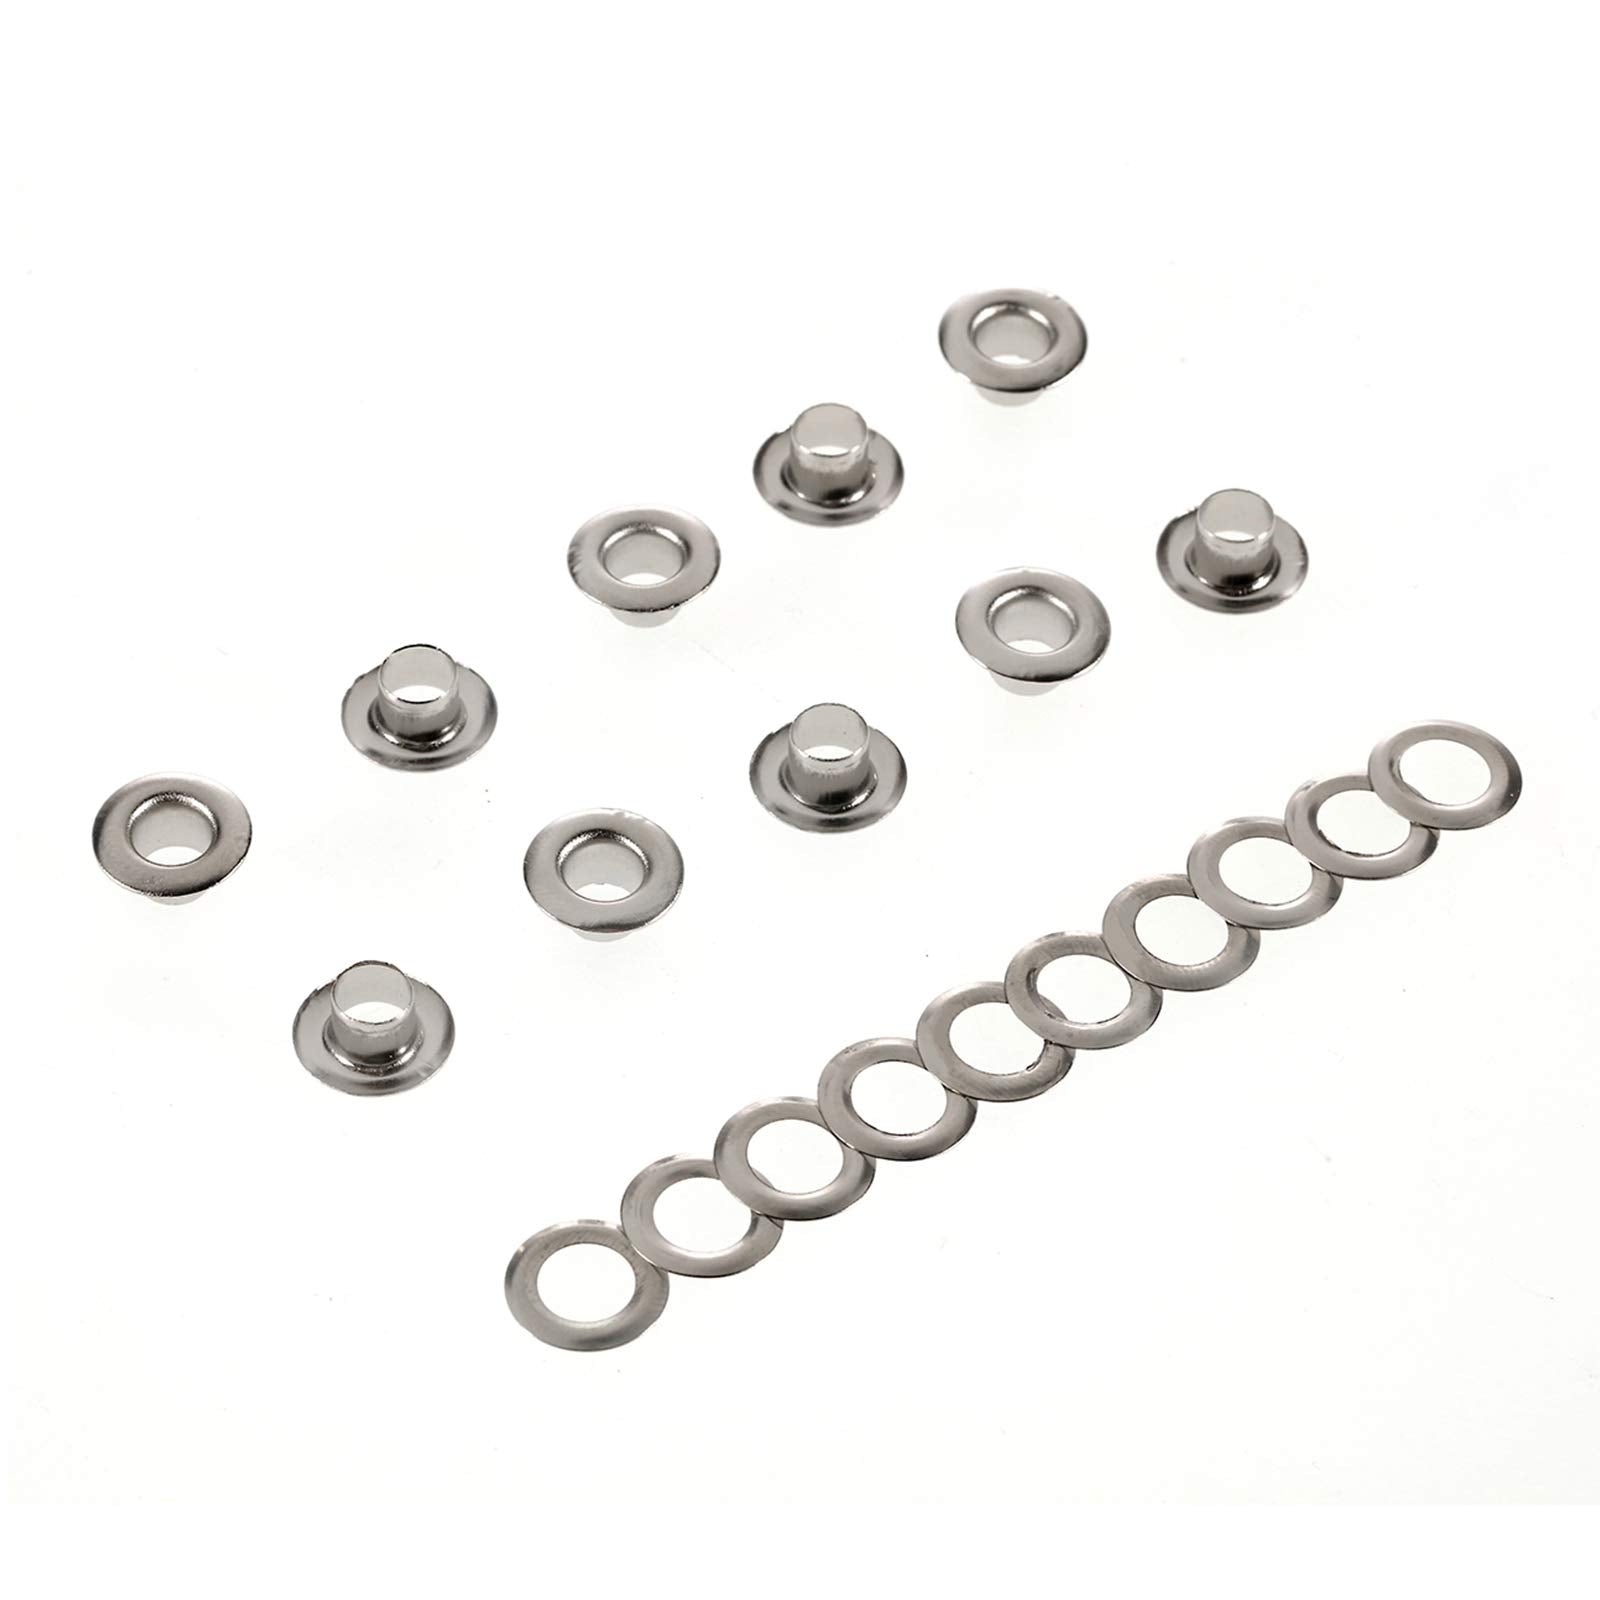 Grommet Kit Metal Eyelets 3/8 Inch 1000 Sets 10mm (Inner Diameter) for